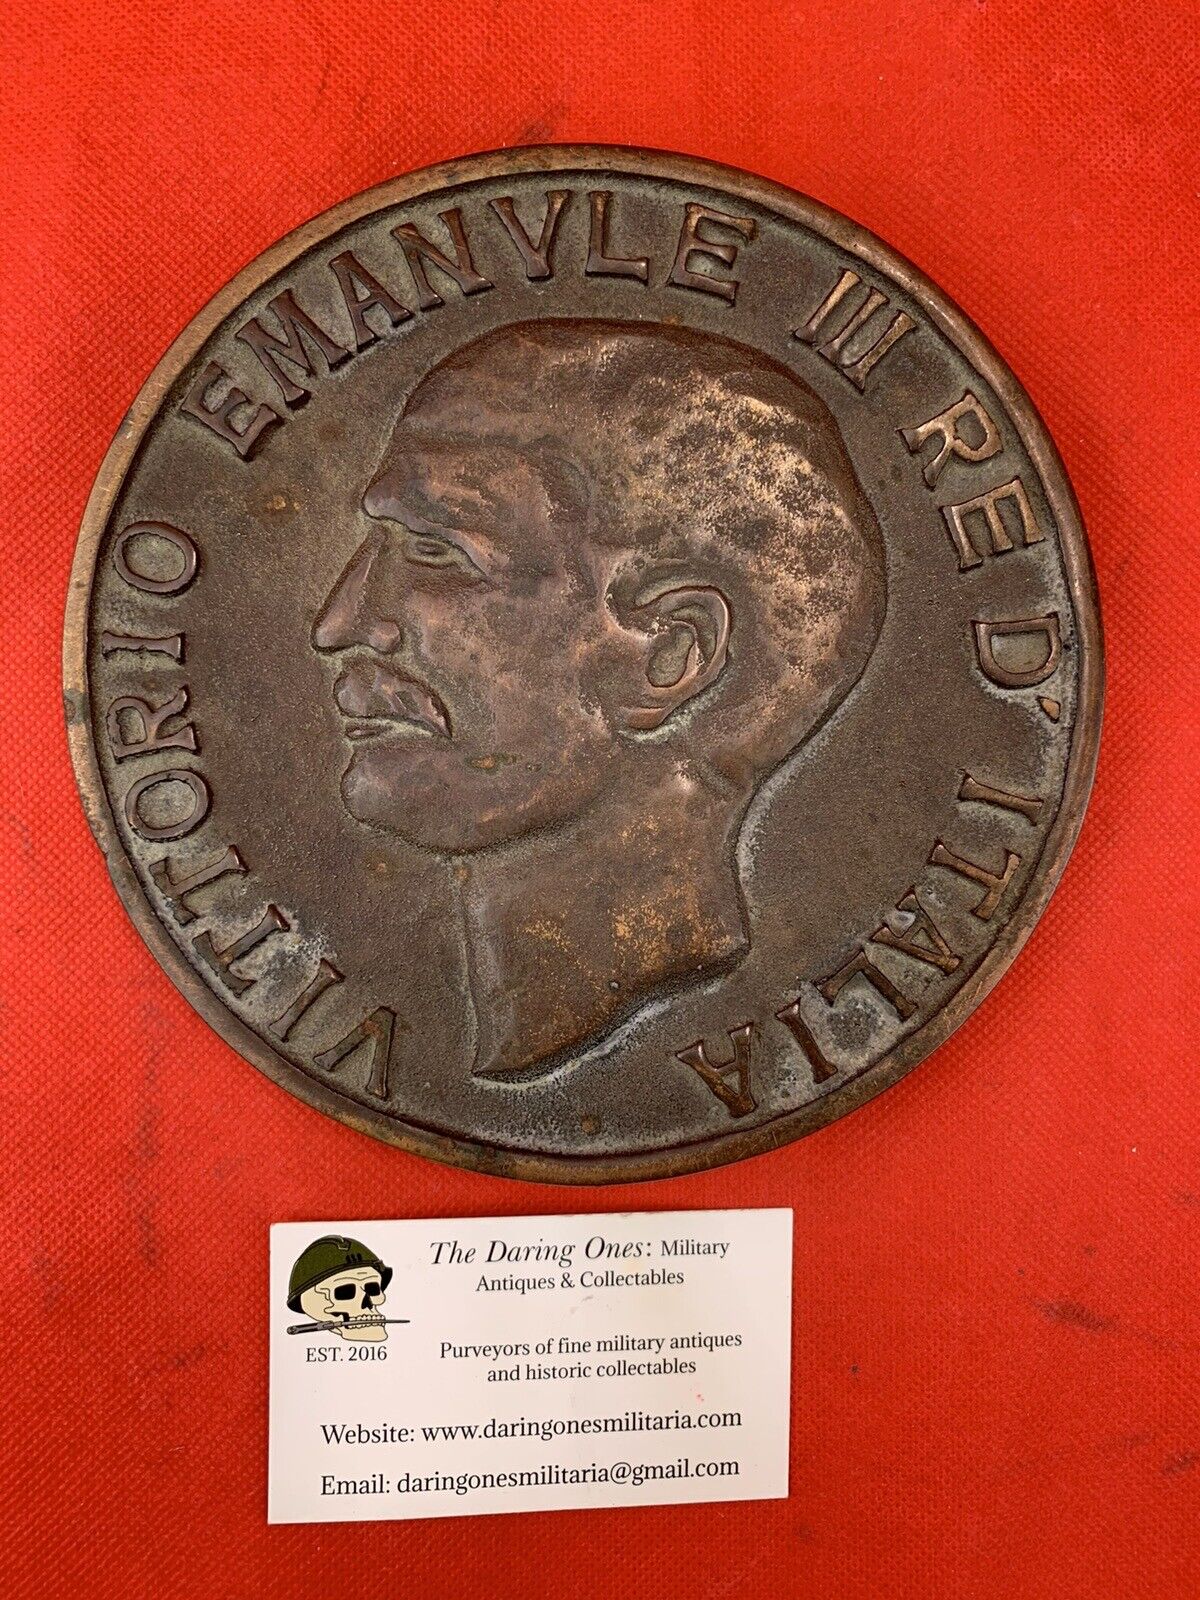 Vintage Japanese Made Italian King Victor Emmanuel III Table Medal 